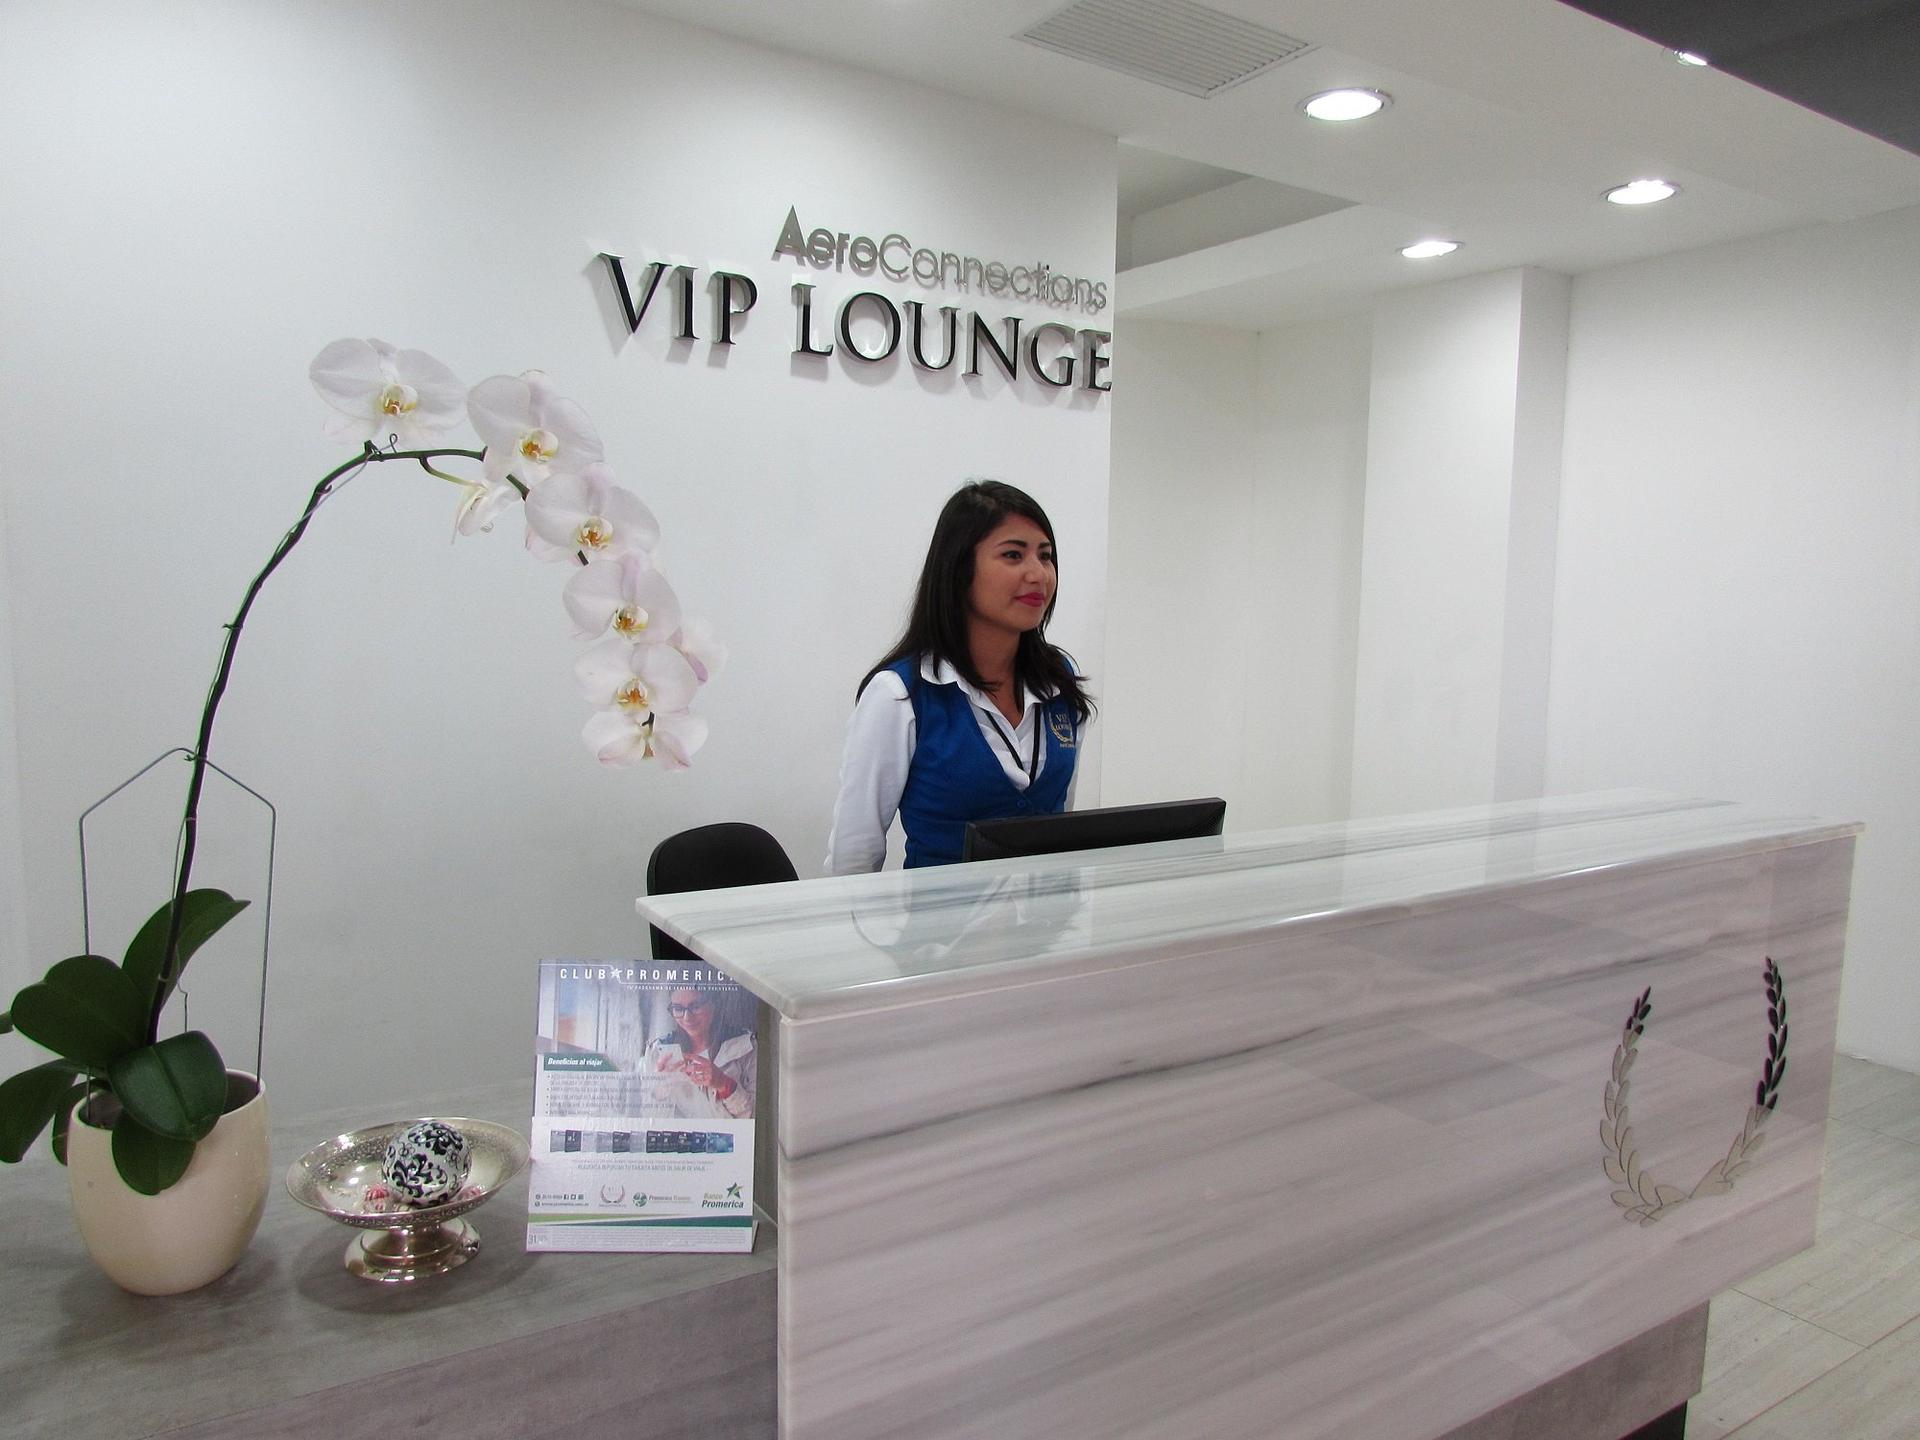 Aeroconnections VIP Lounge image 5 of 10